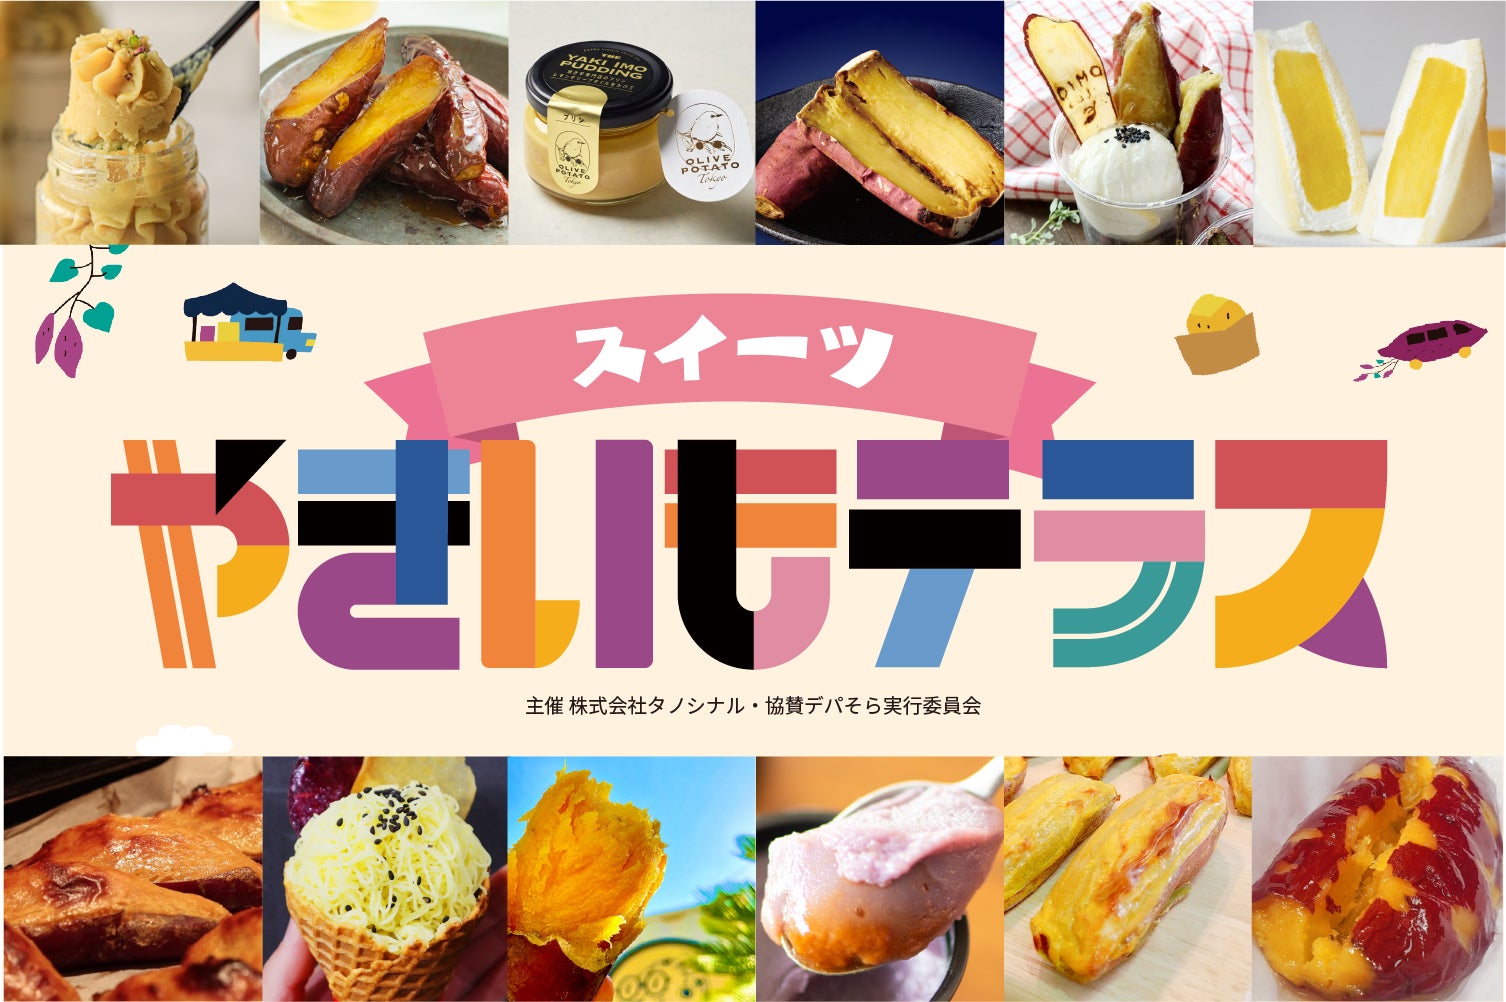 伊勢丹浦和店にて、4月25日(火)より「スイーツやきいもテラス」を開催！焼き芋専門店による人気商品をお楽しみいただけます。